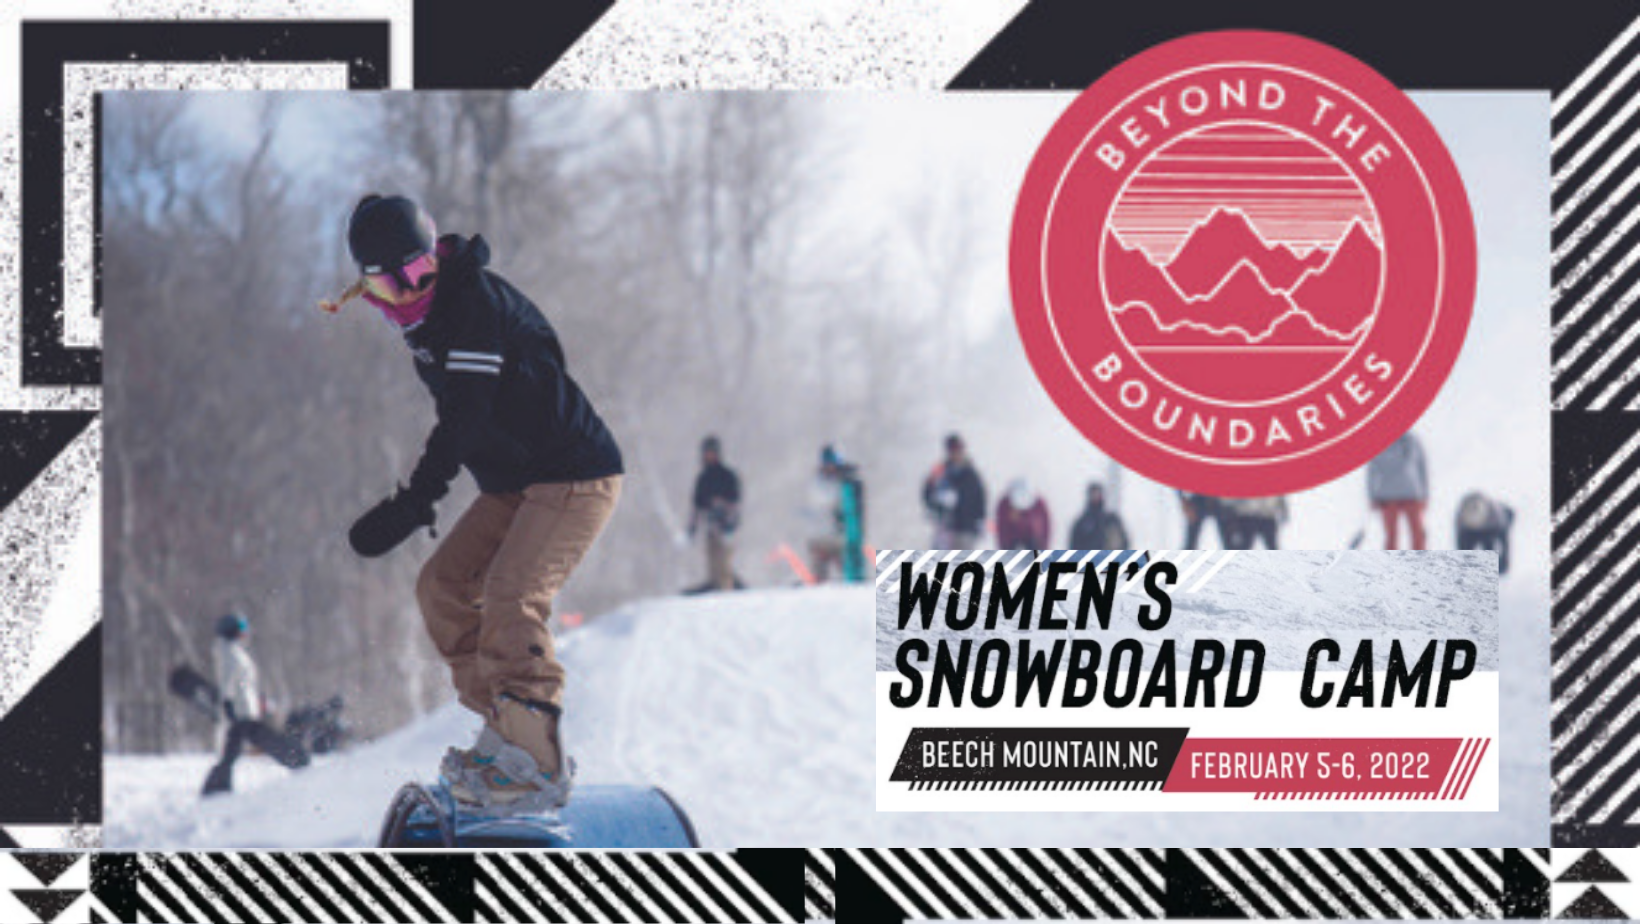 Women snowbaording for btbounds